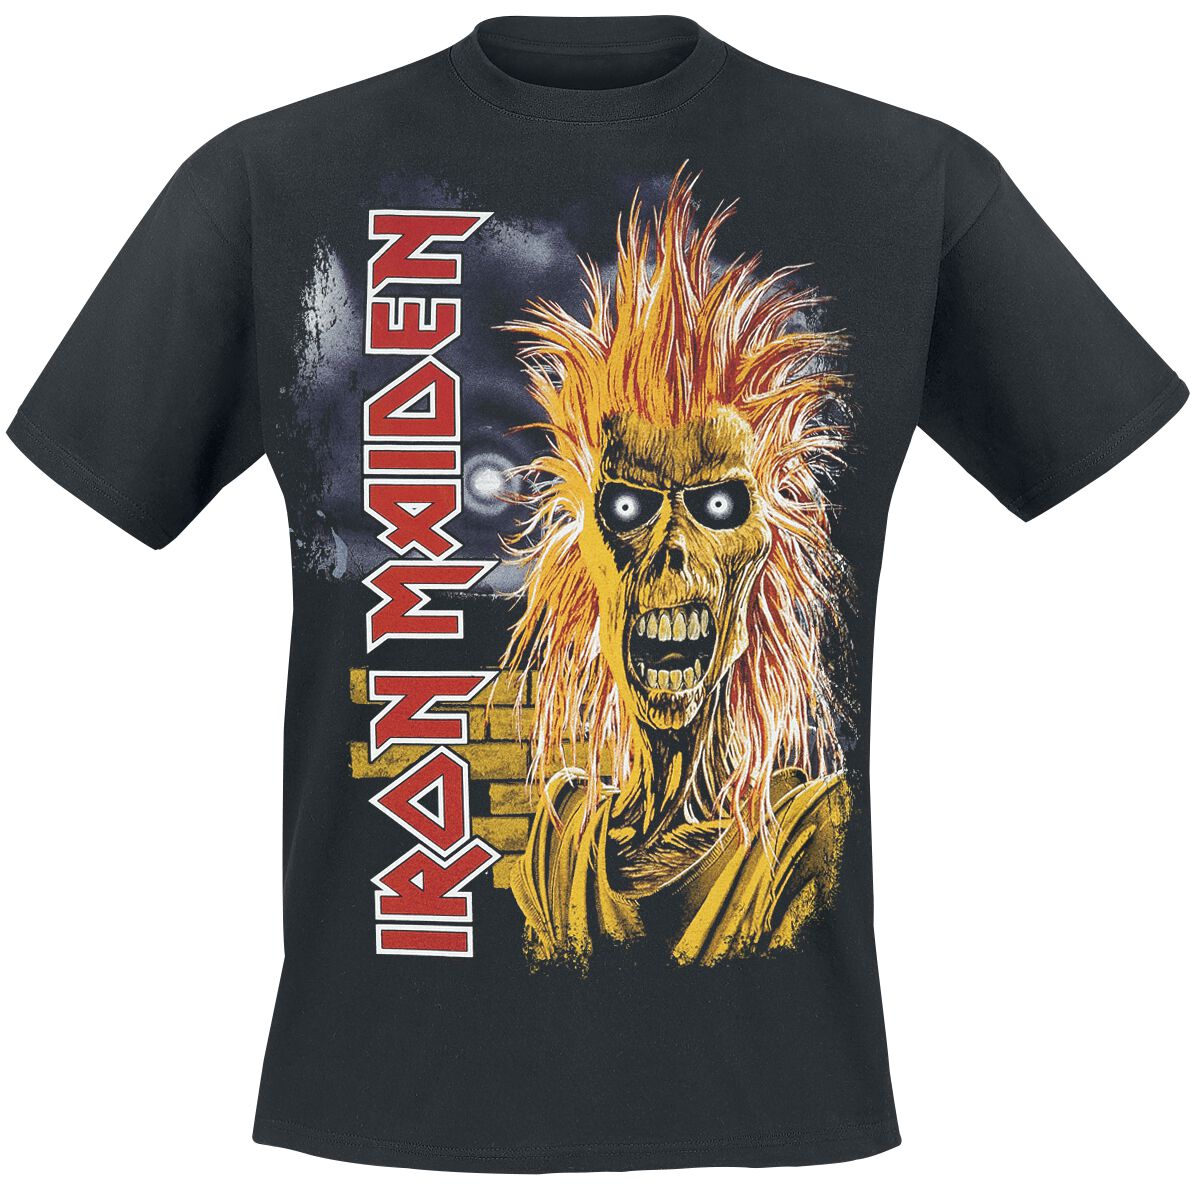 Iron Maiden 1st Album Tracklist T-Shirt schwarz in M